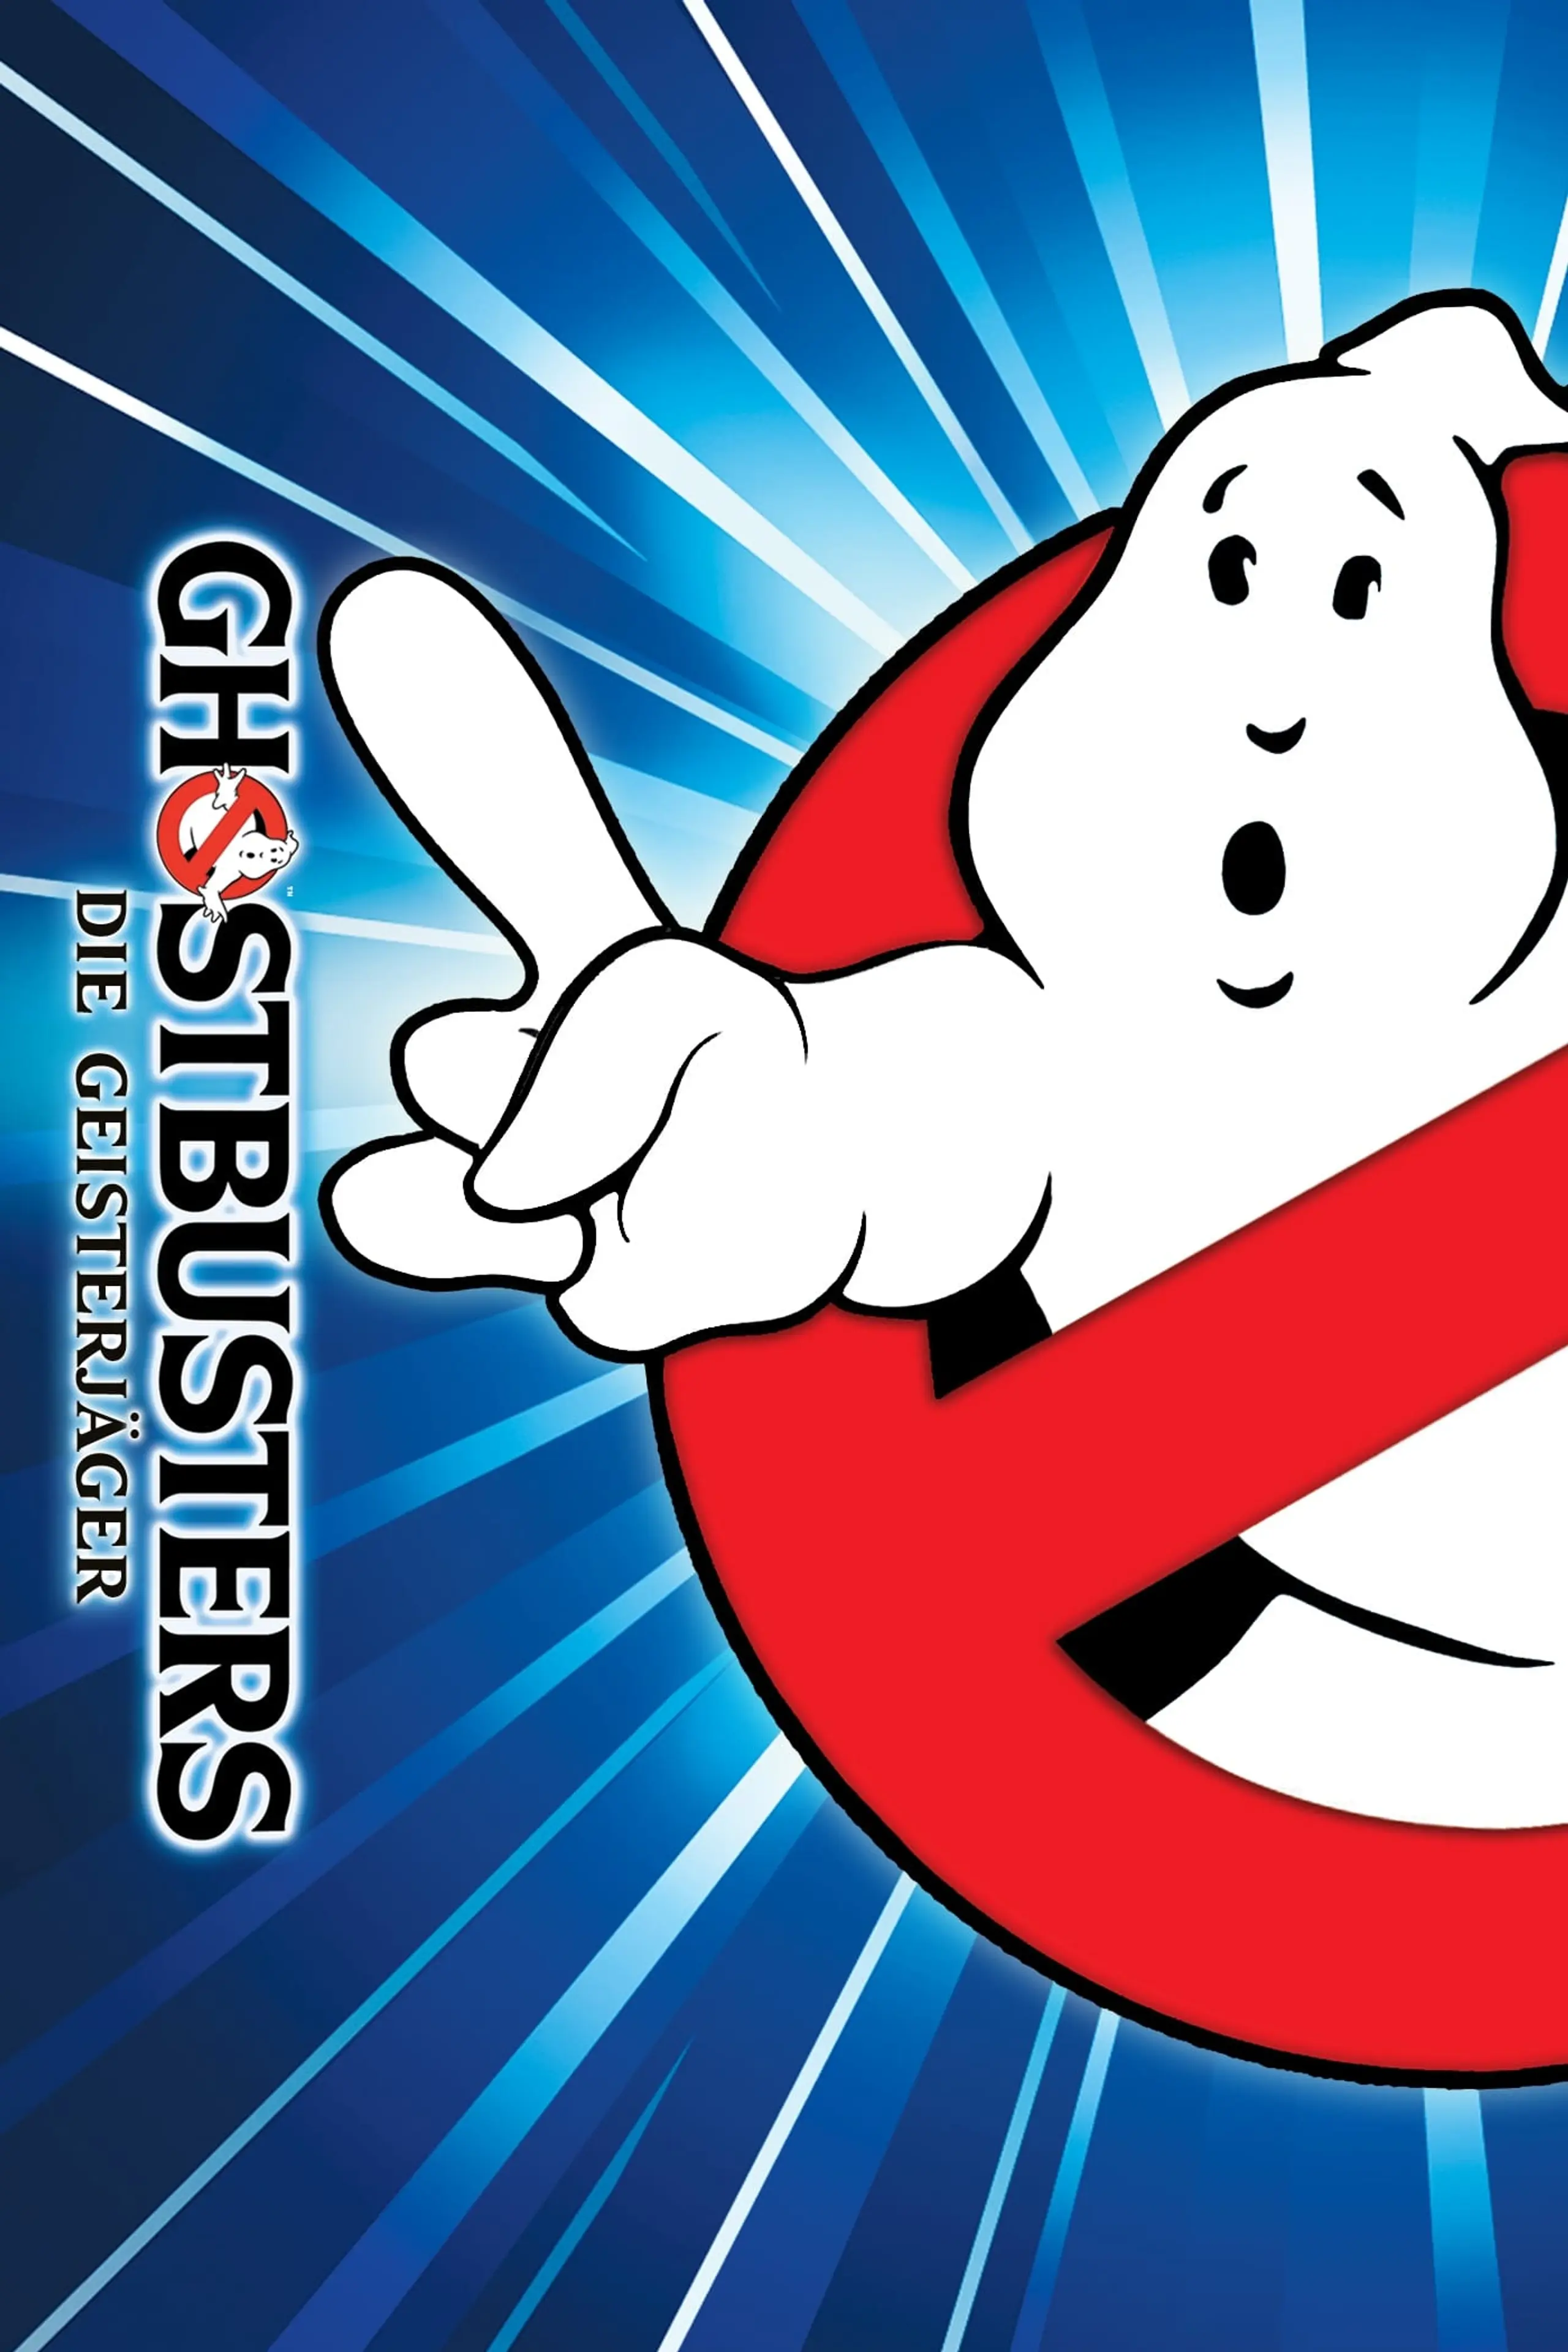 Ghostbusters - Die Geisterjäger